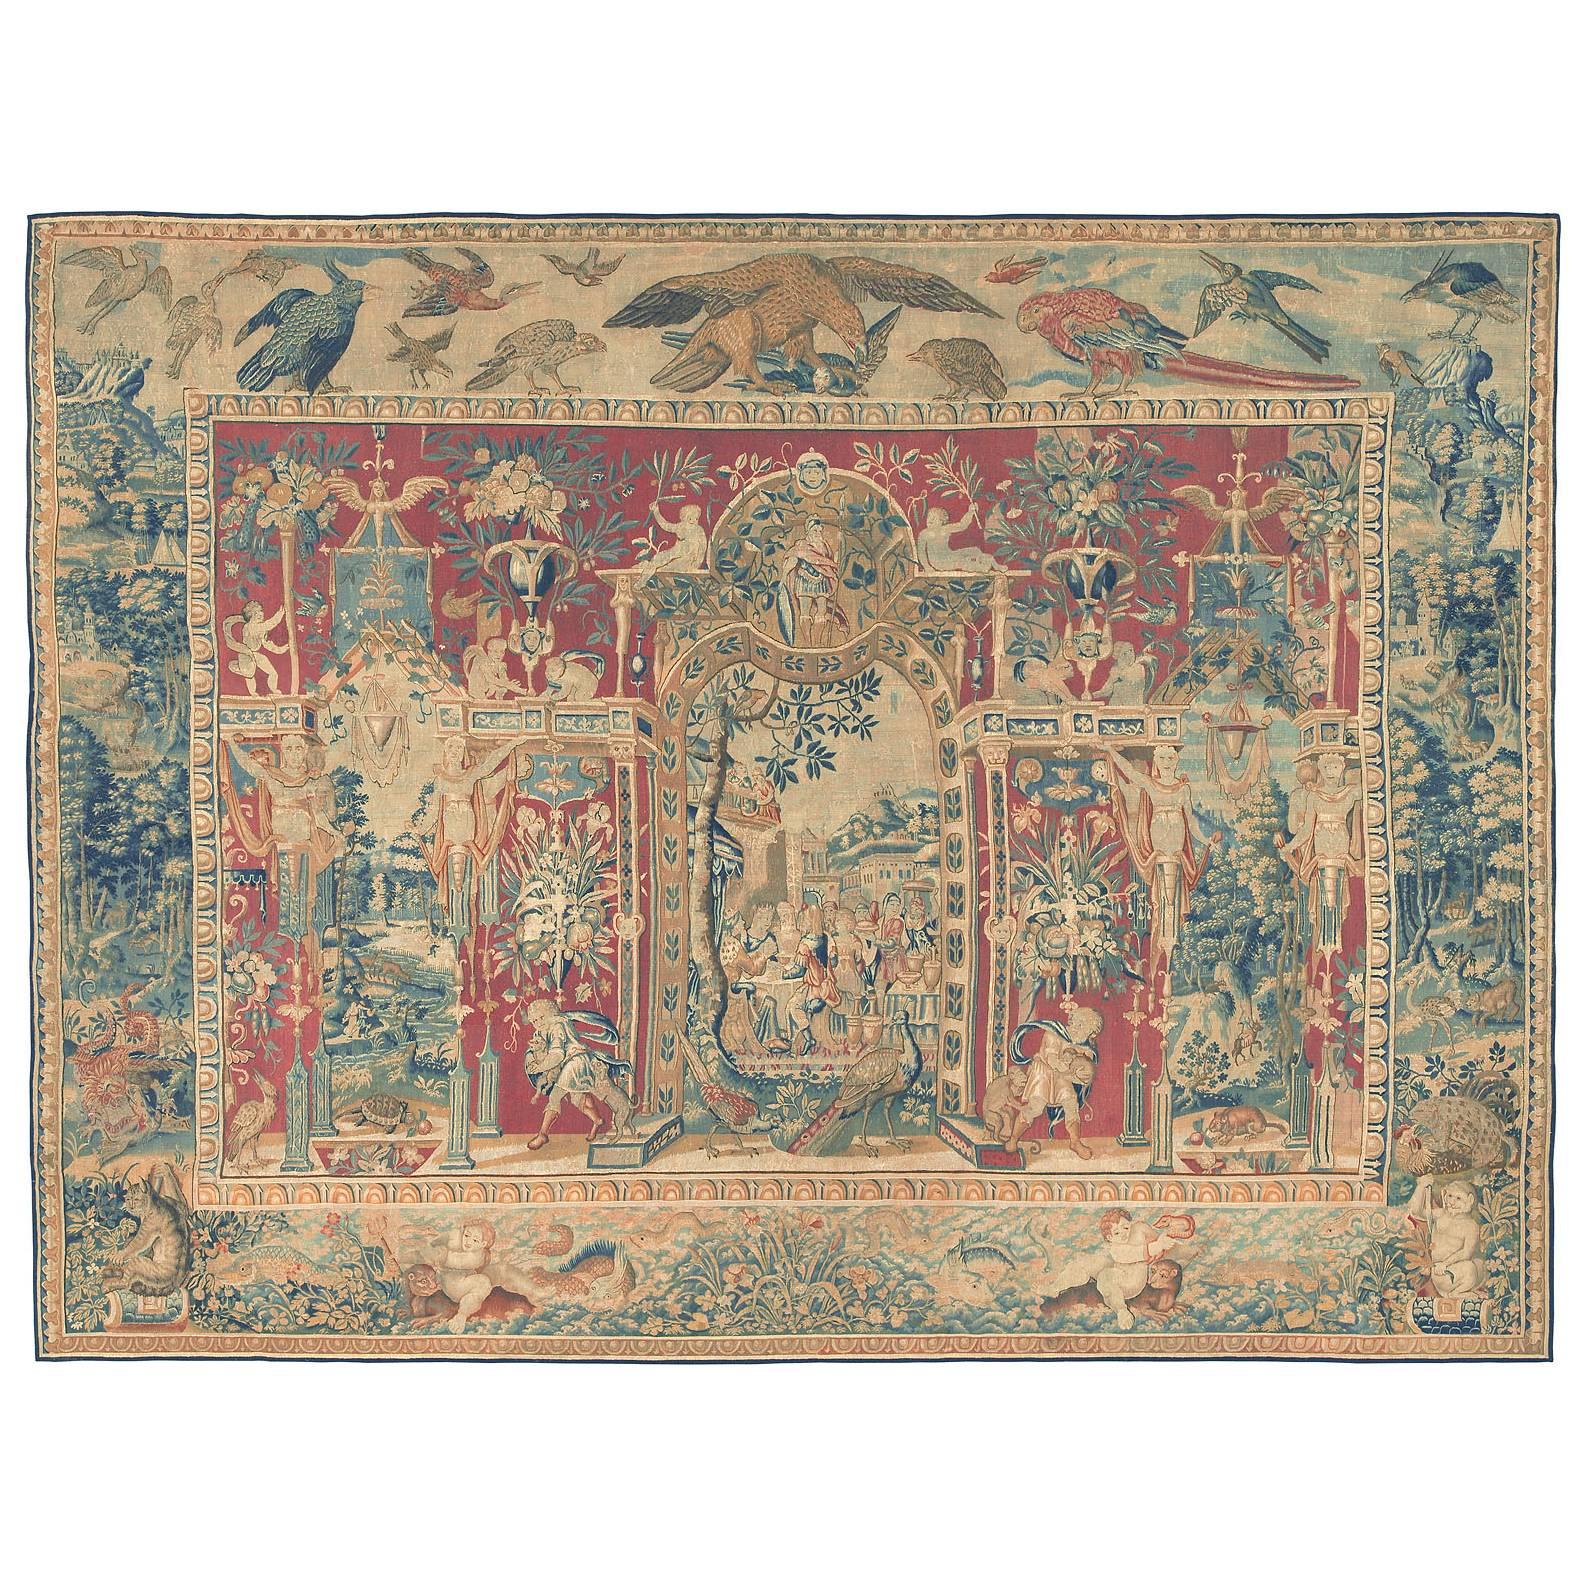 Wandteppich aus dem späten 16. Jahrhundert